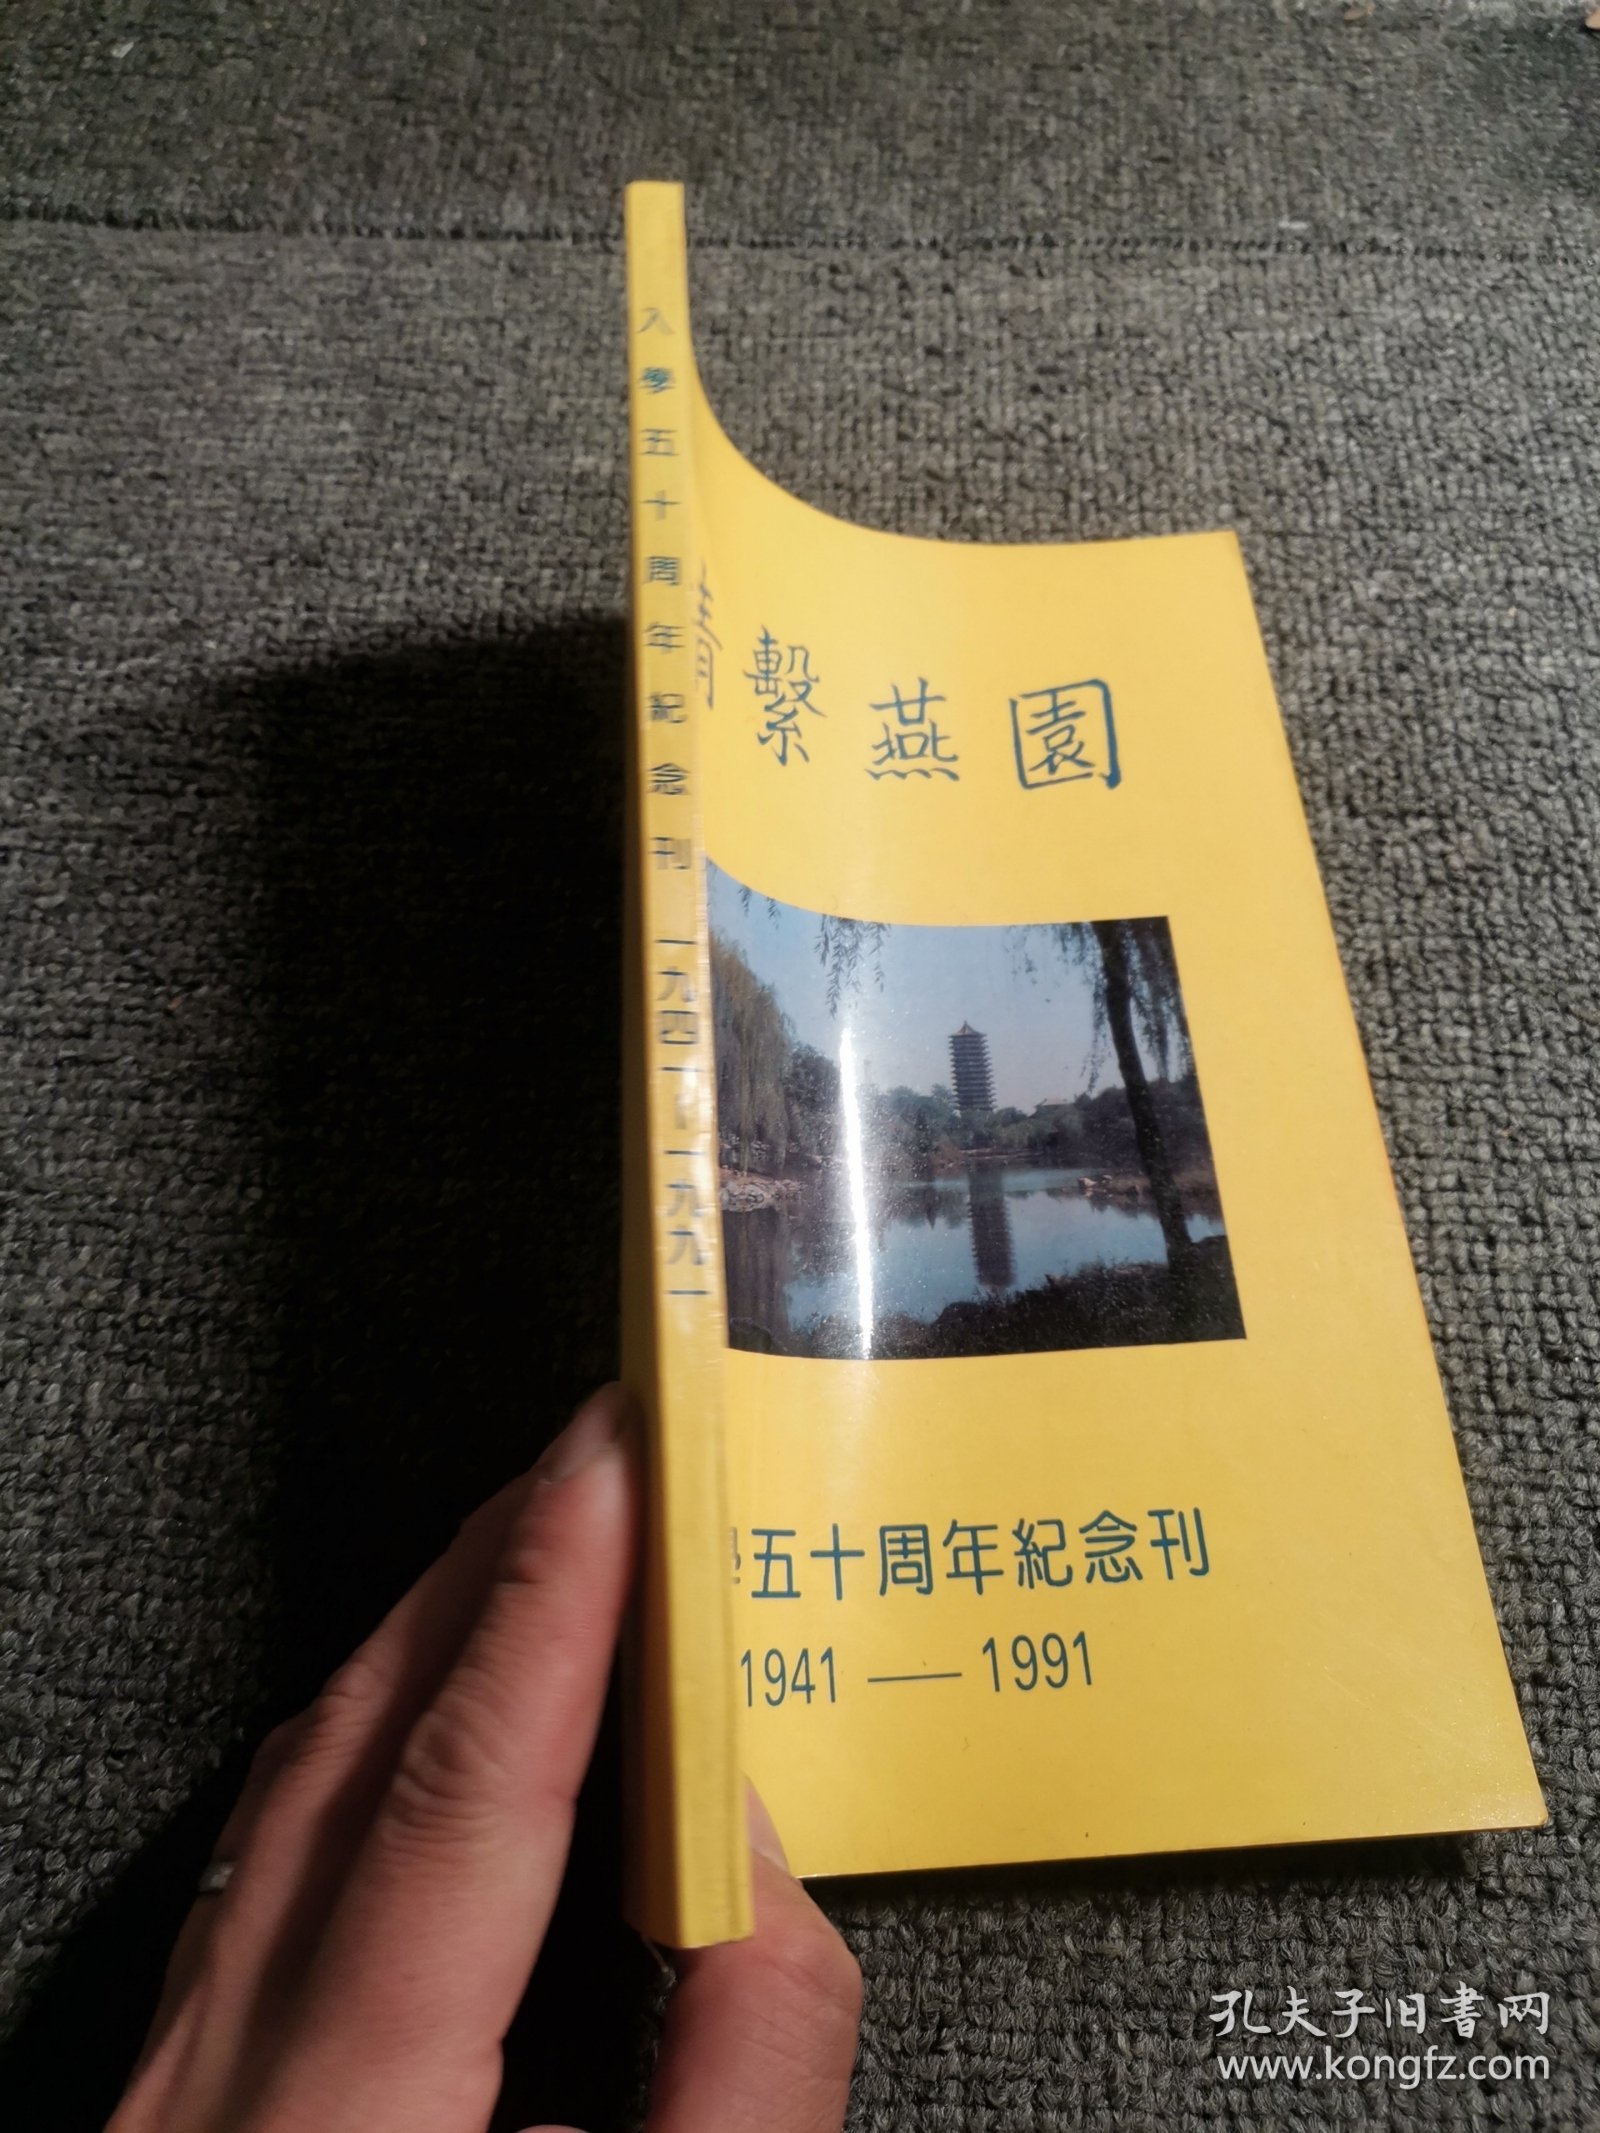 情系燕园:入学五十周年纪念刊1941―1991